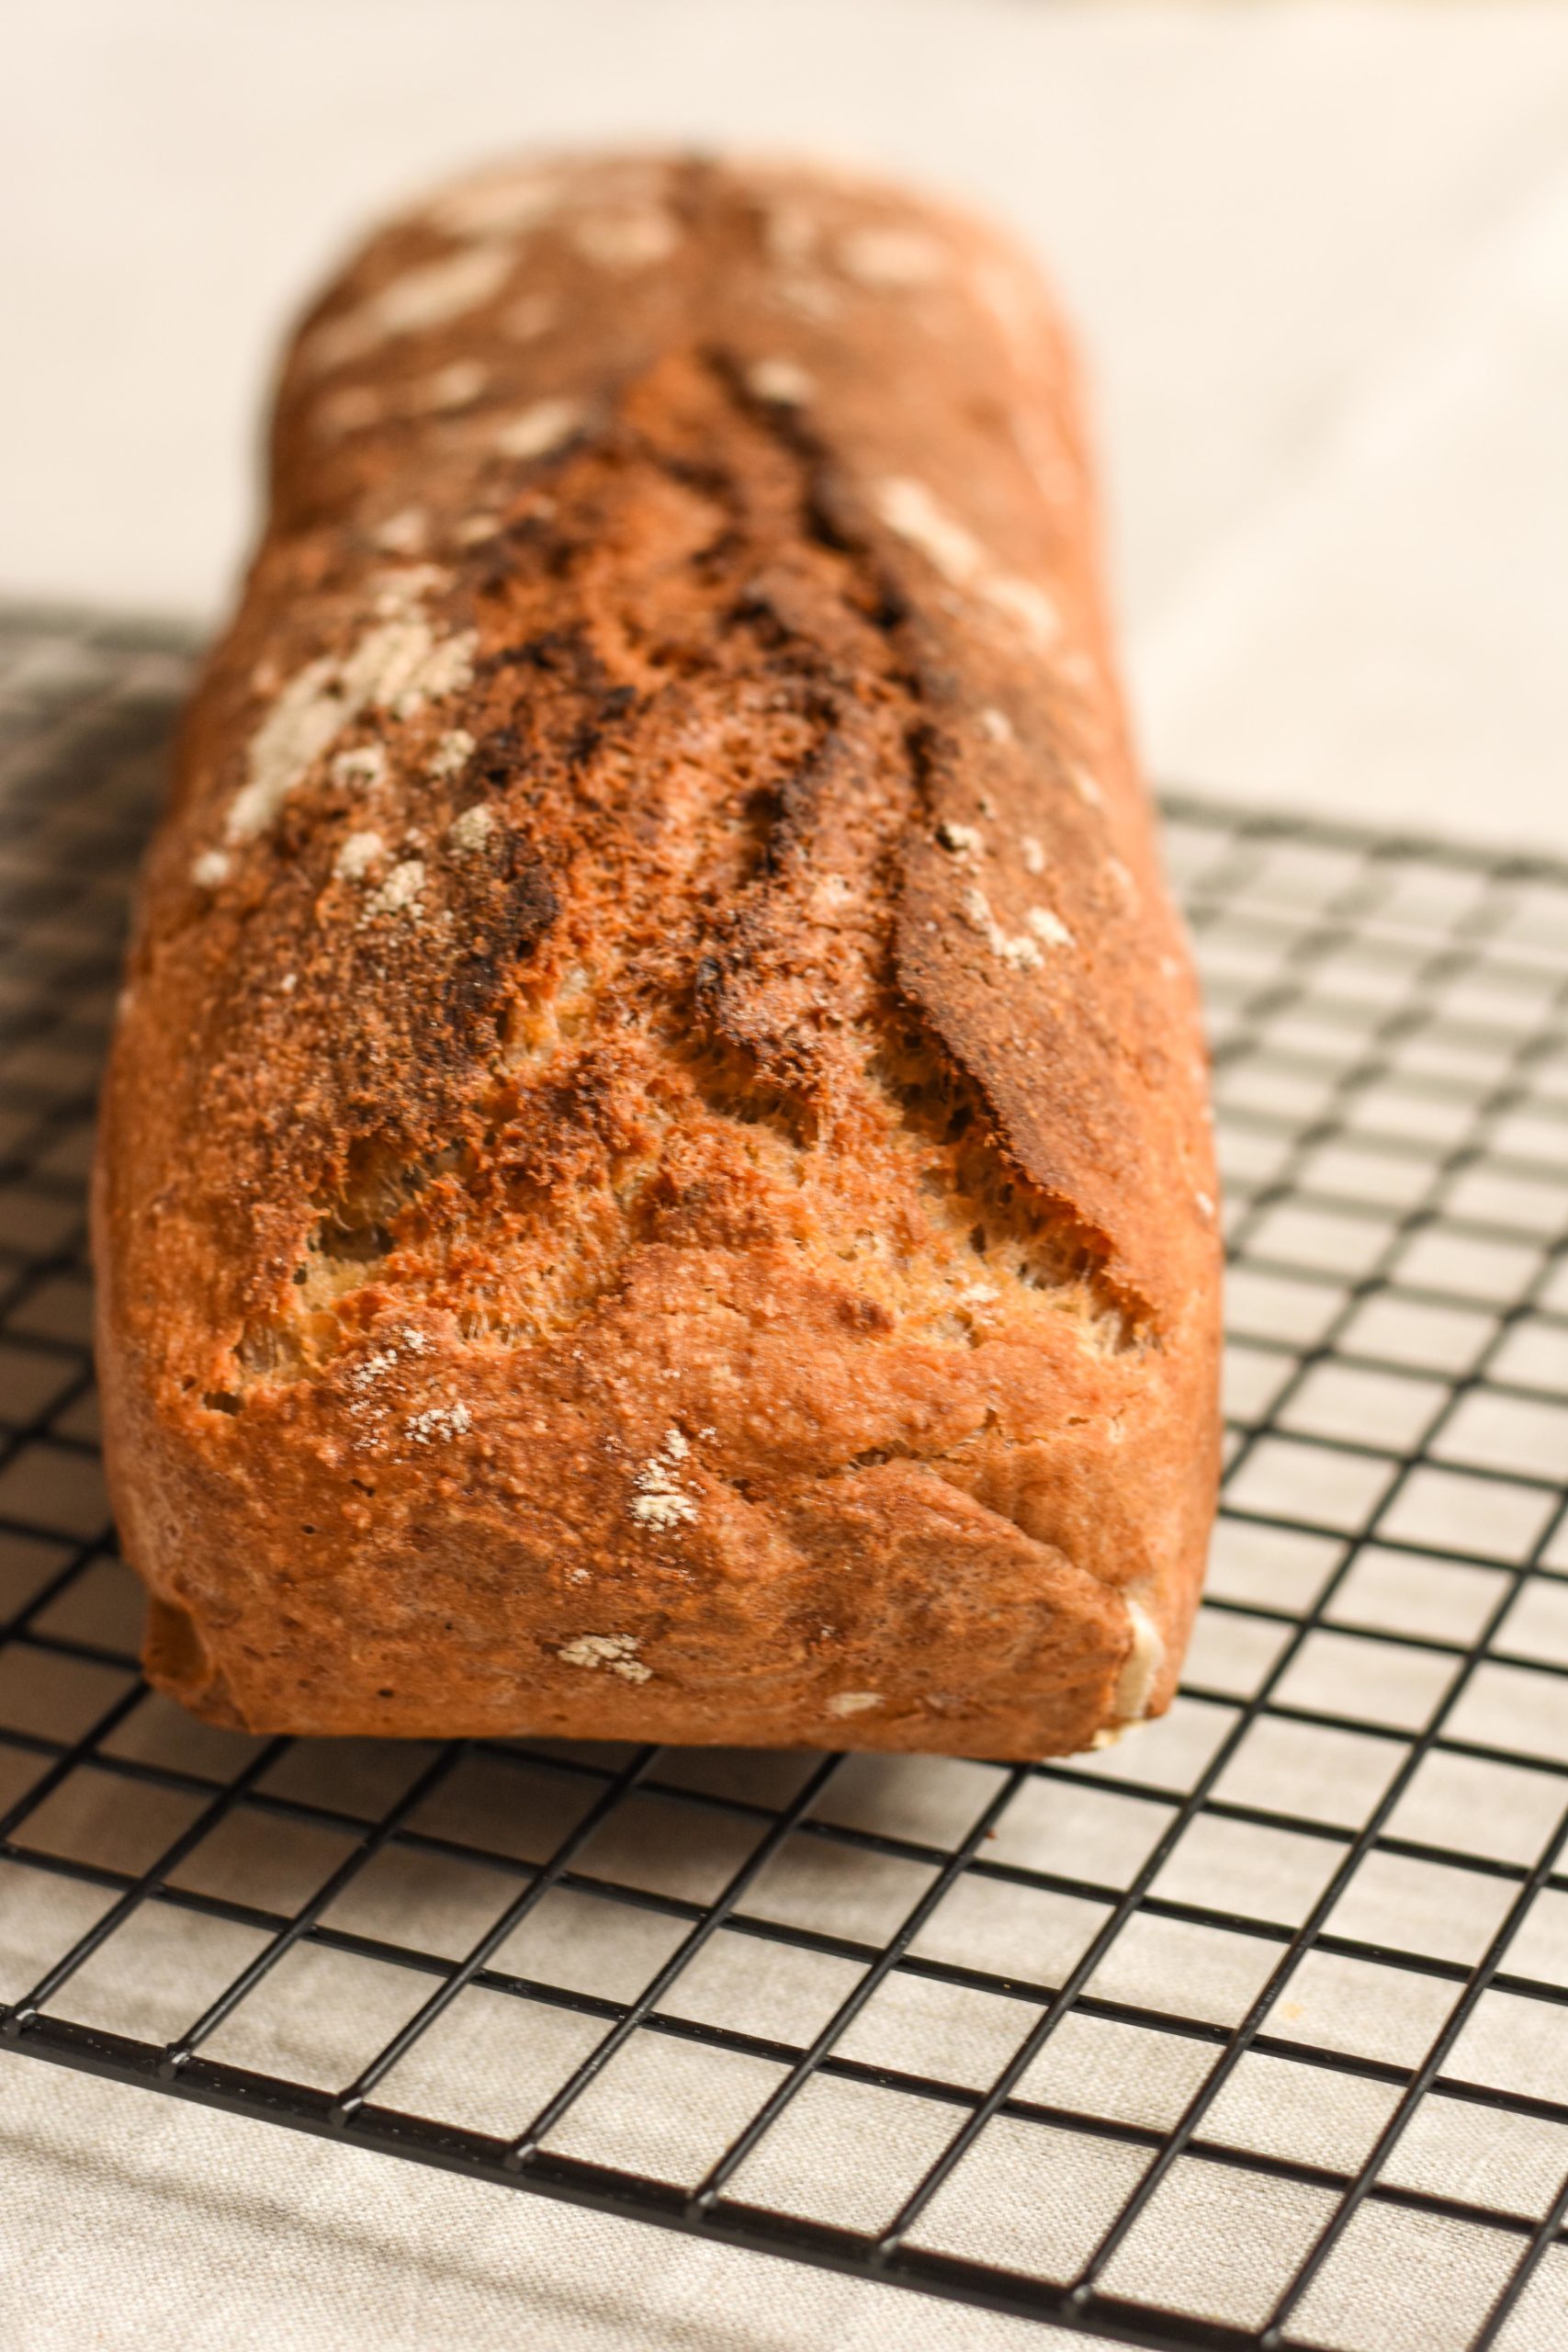 Glutenfreies Brot backen mit Haferflocken und Buchweizenmehl